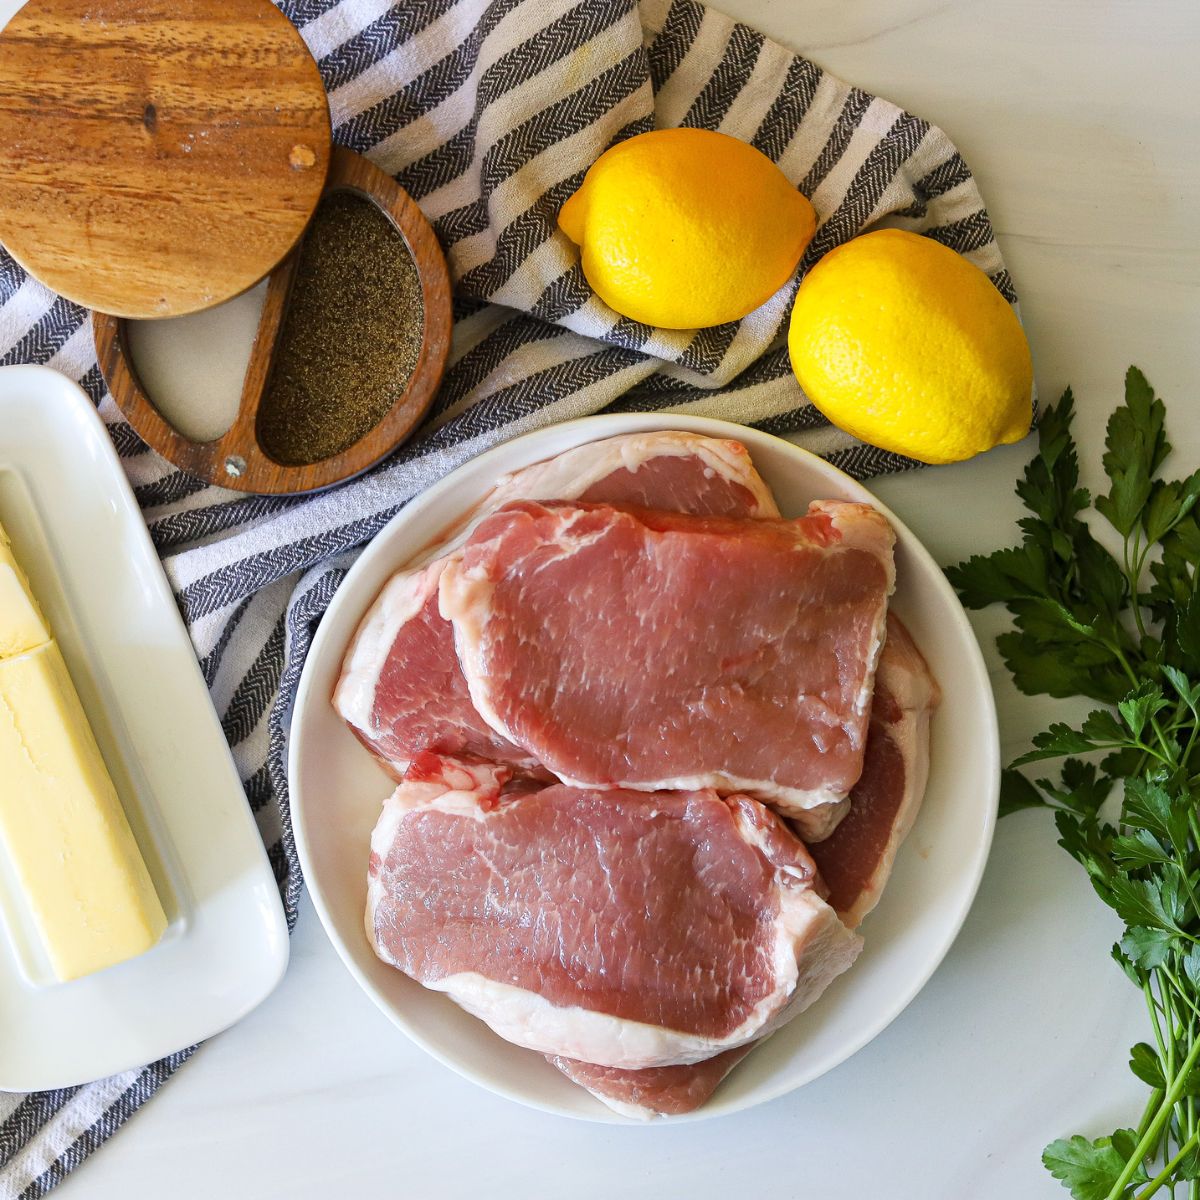 ingredients for lemon pepper pork chops including a plate full of pork chops, fresh lemons, salt, pepper, butter, and fresh parsley.